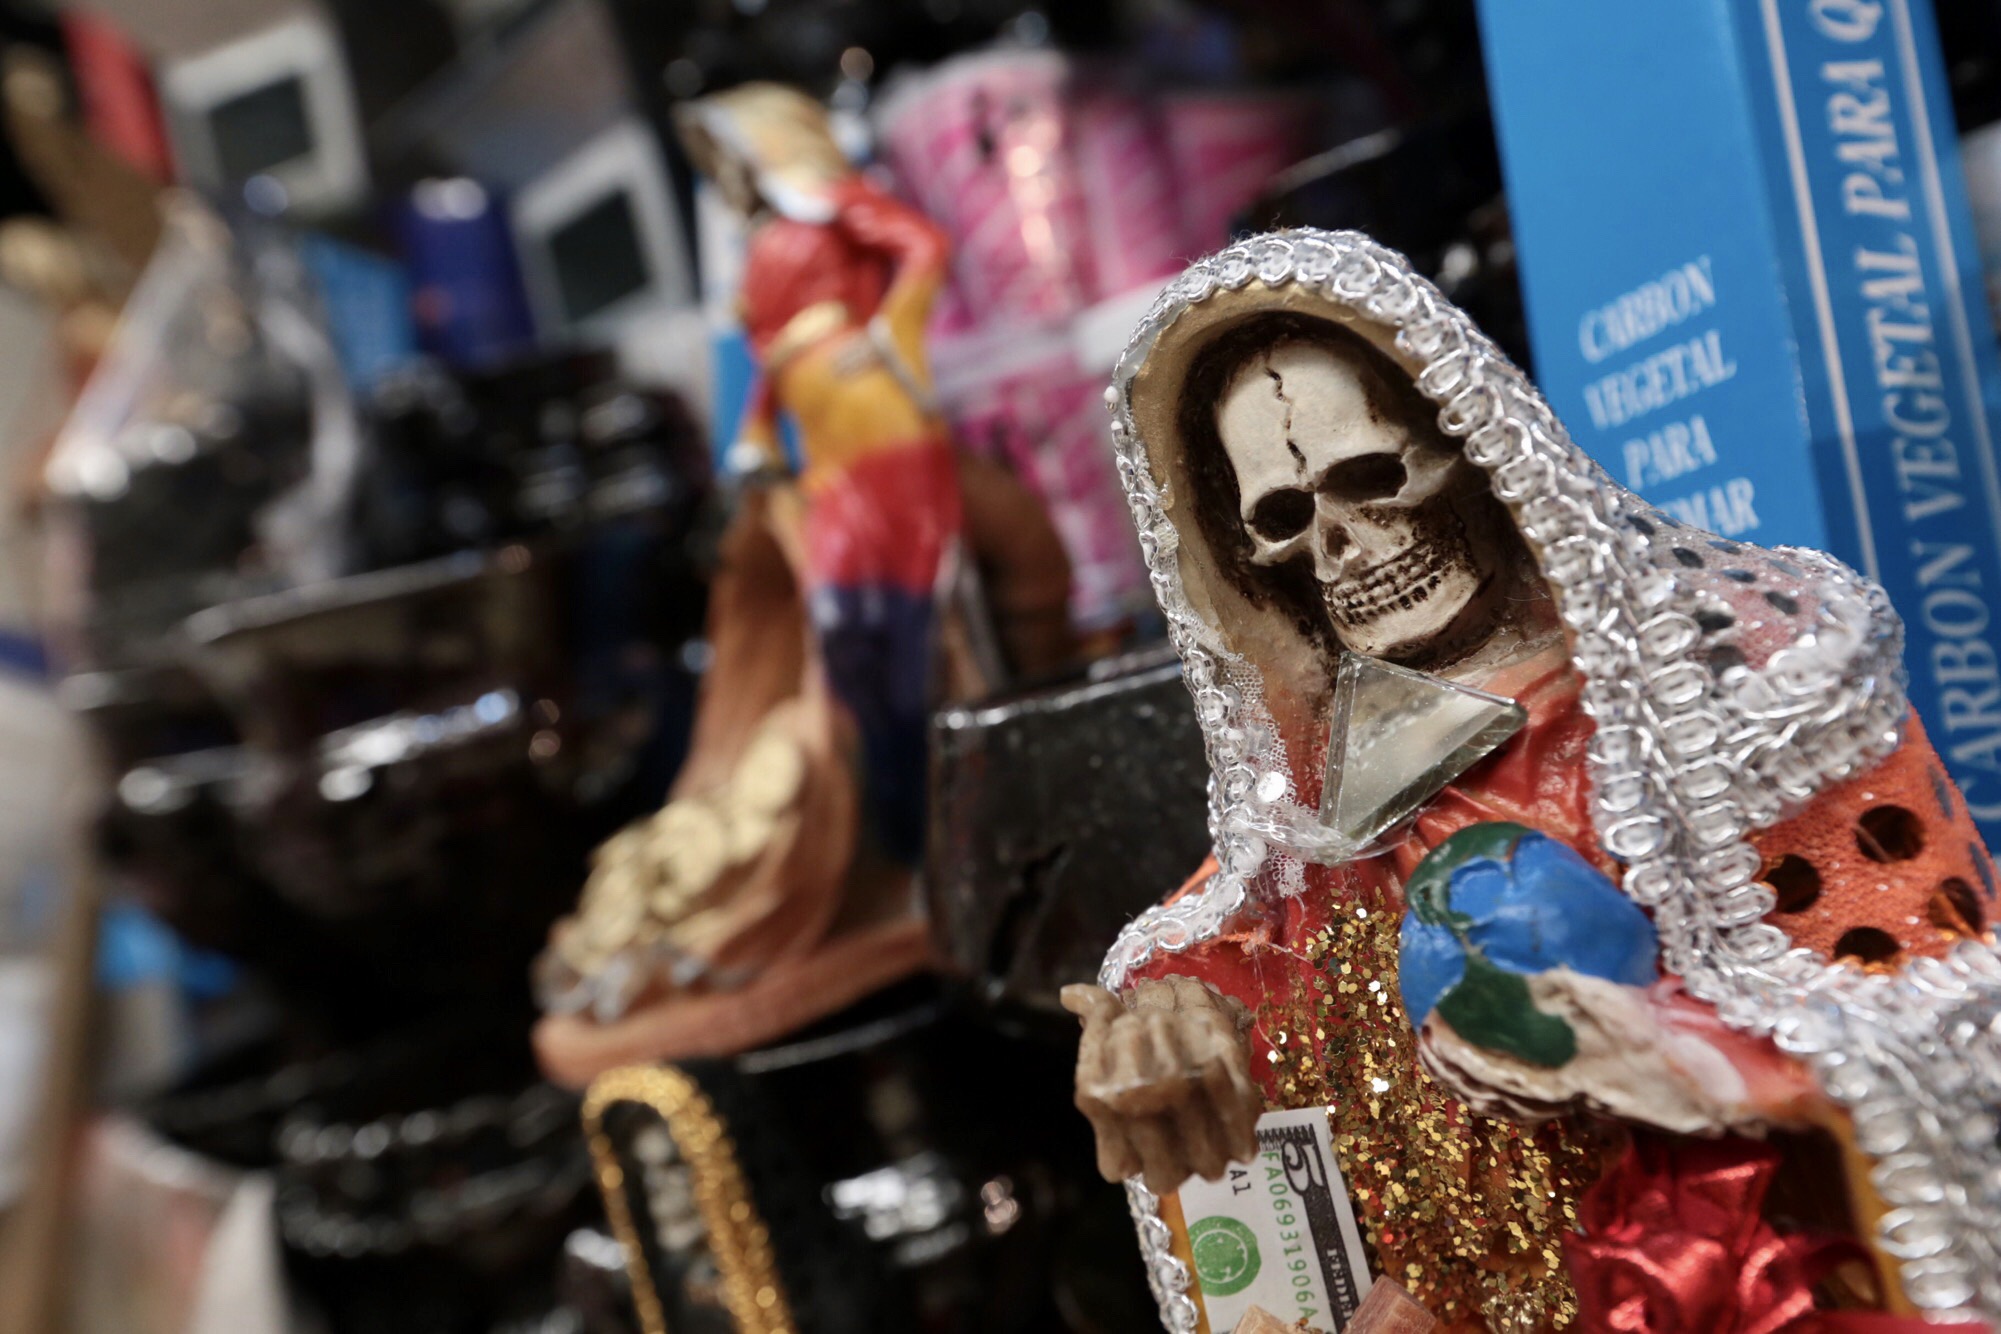 La Santa muerte es venerada por algunos capos de la droga (Foto: ARTEMIO GUERRA BAZ /CUARTOSCURO)